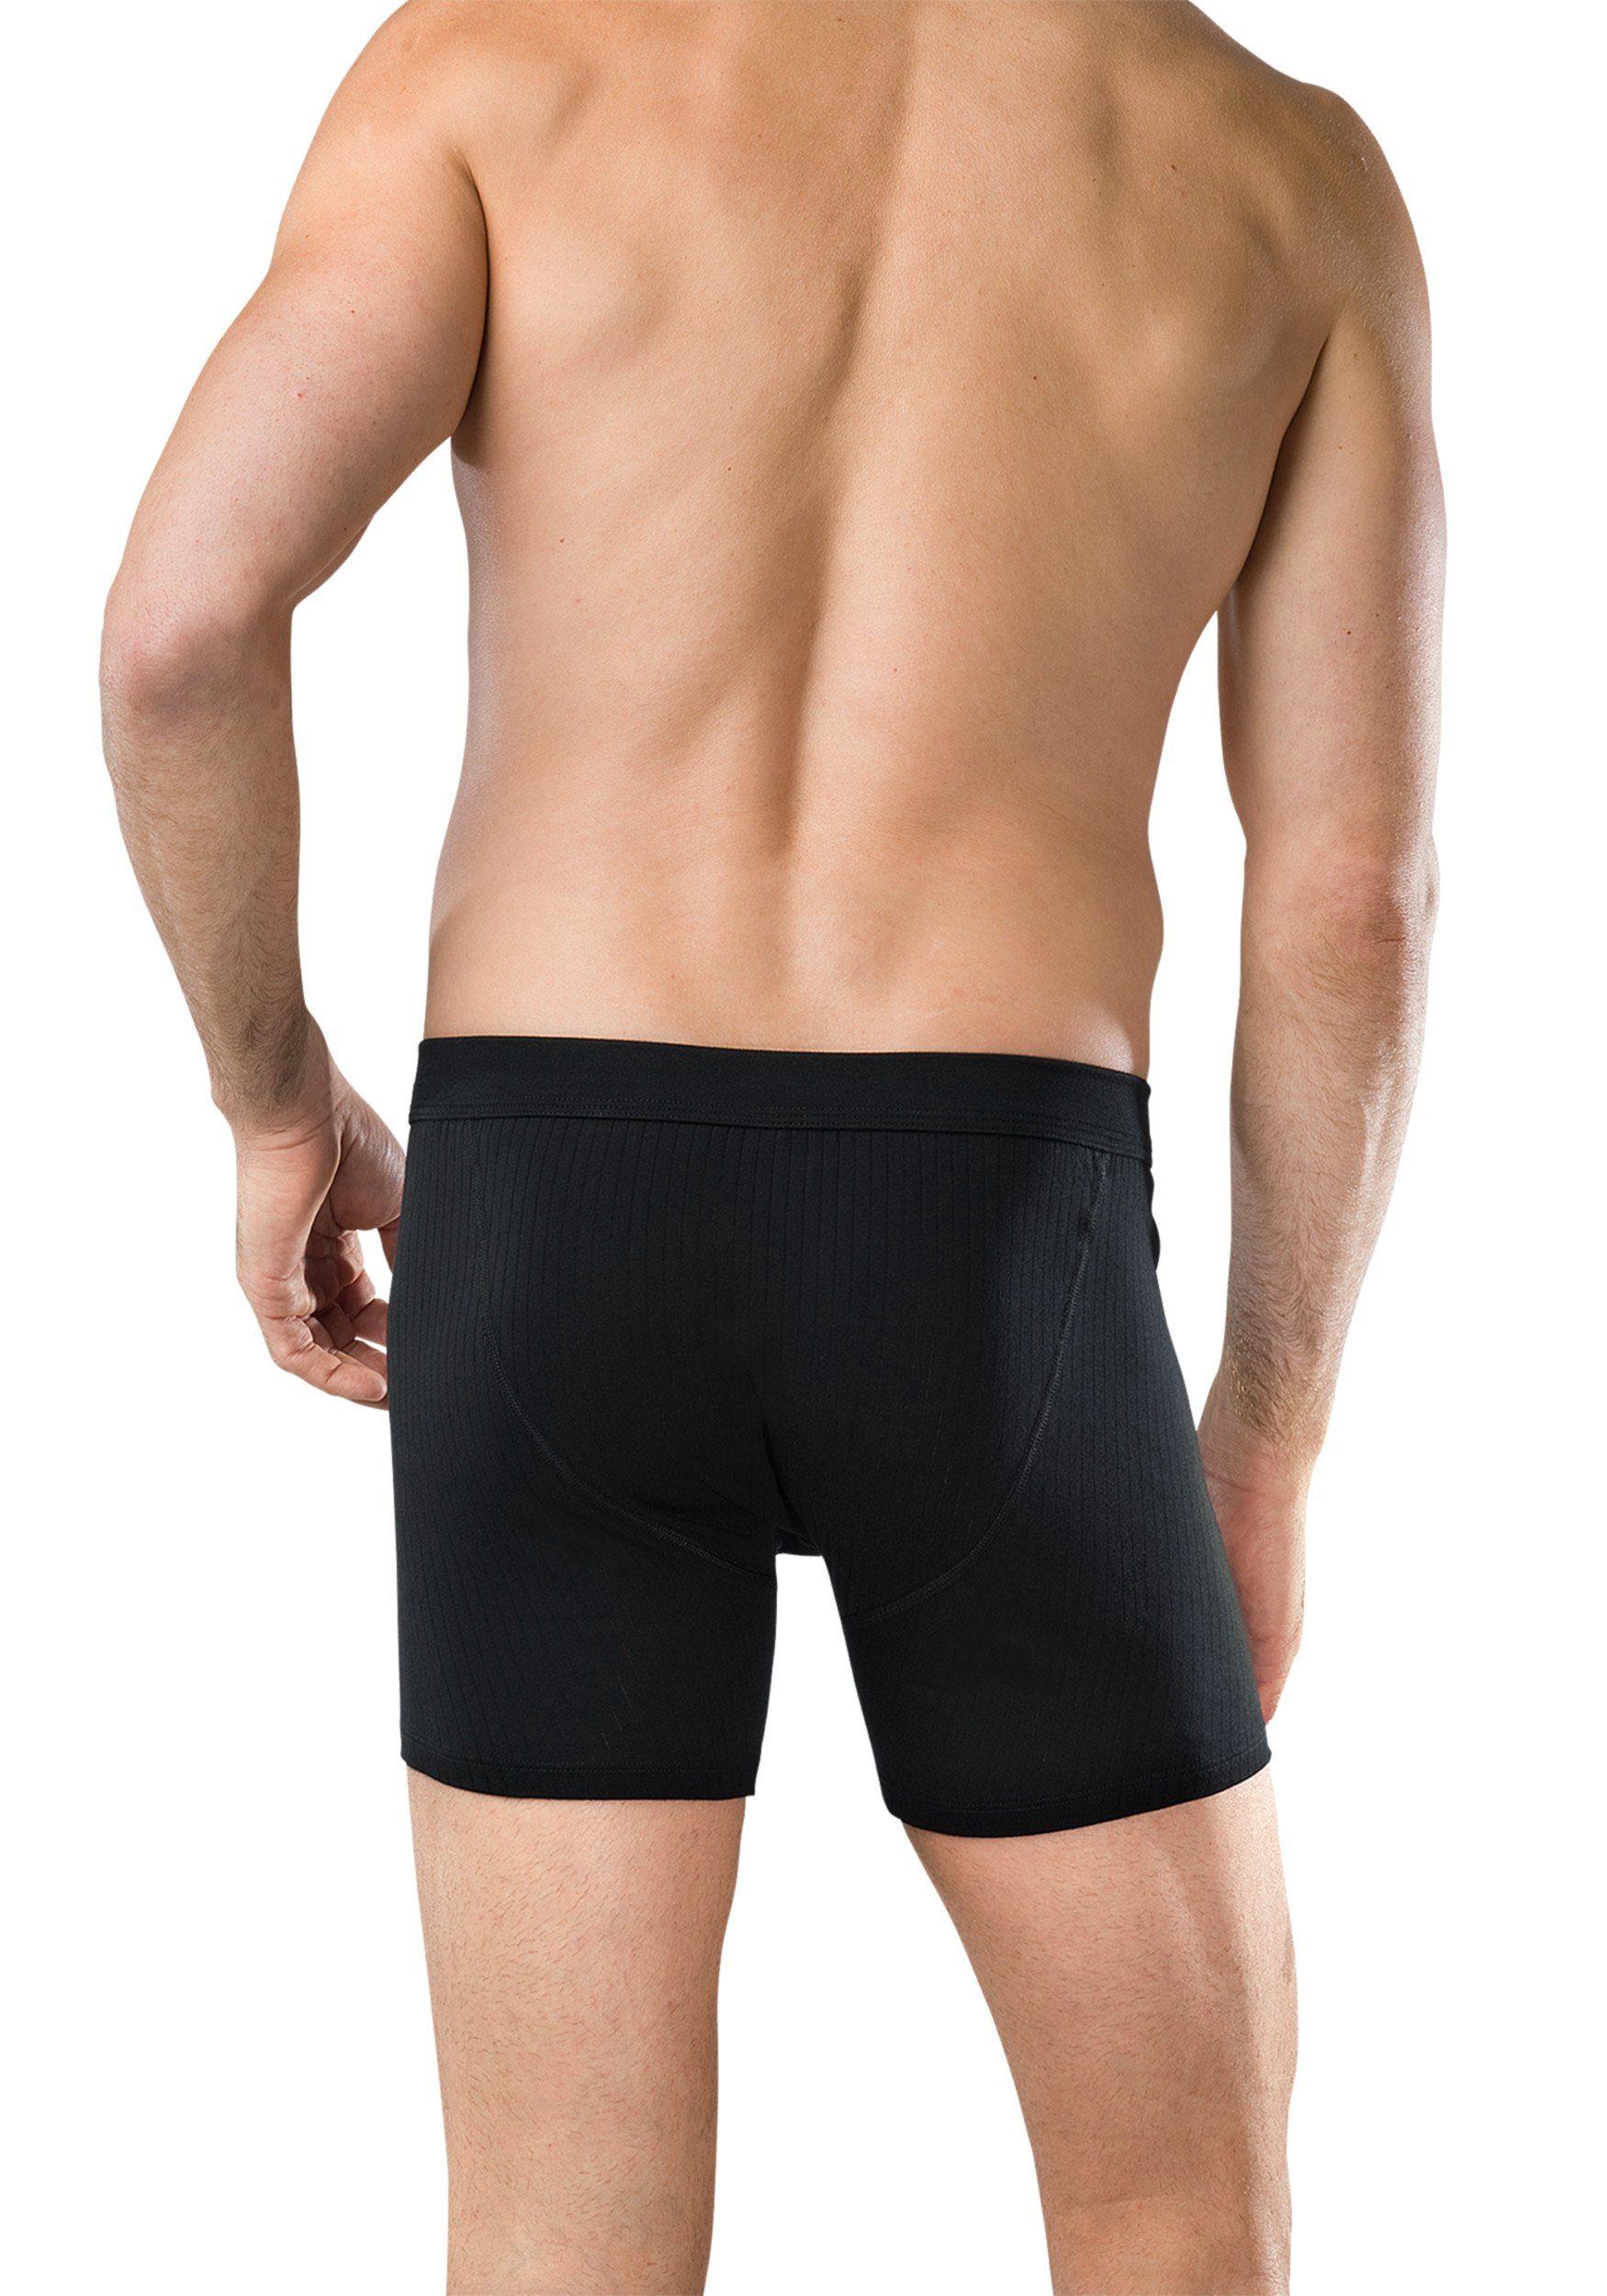 Wäsche/Bademode Boxershorts Schiesser Boxershorts Cotton Essentials Authentic (2 Stück) Herren Shorts im Doppelpack